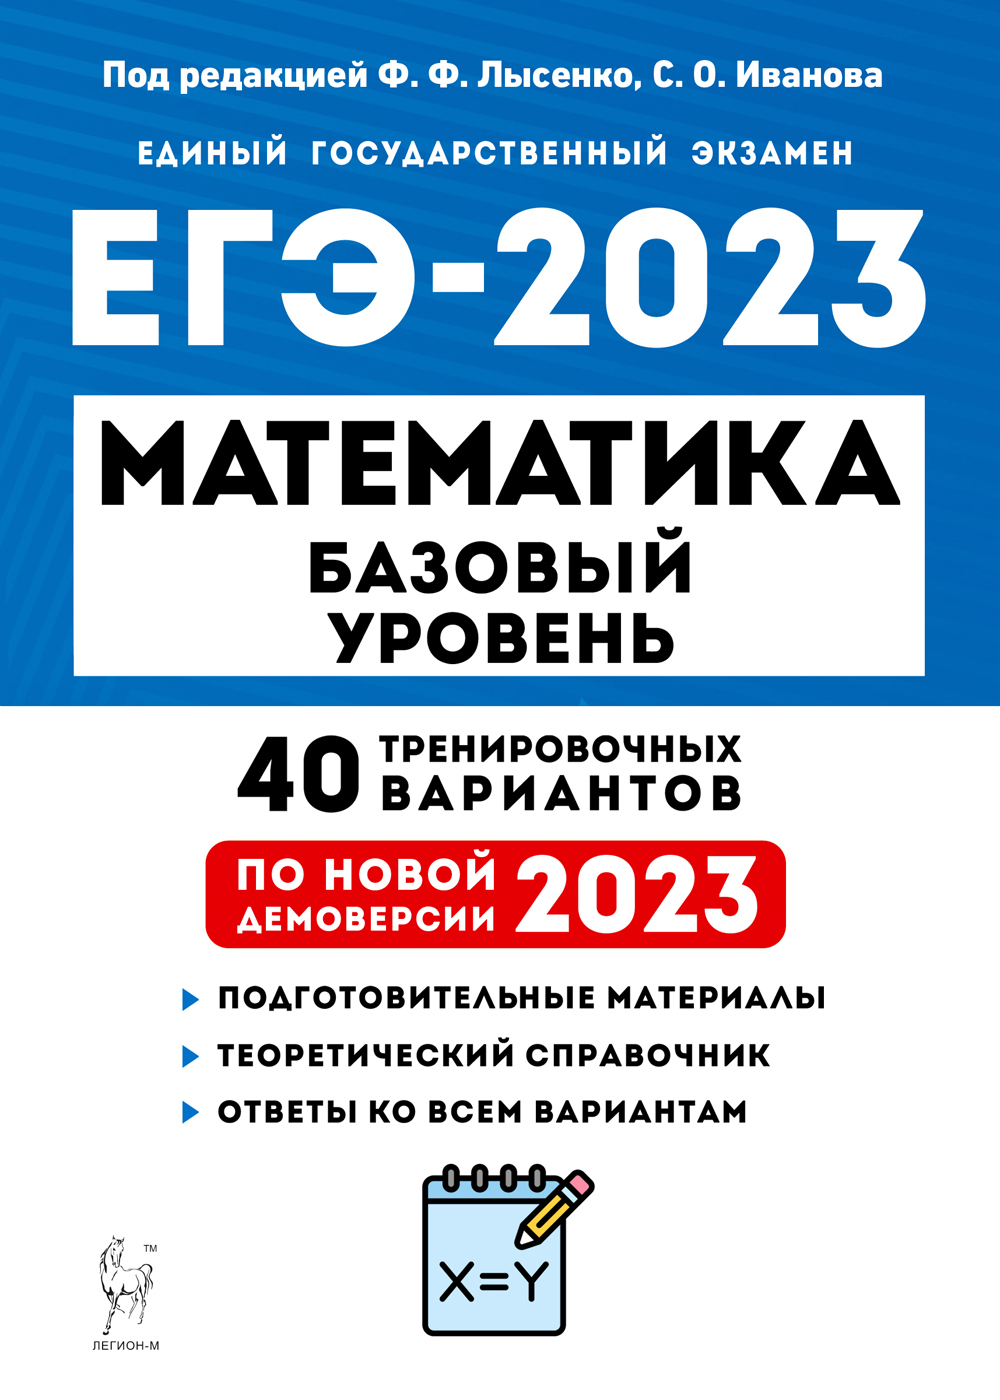 ЕГЭ-2023. Математика. Подготовка к ЕГЭ. Базовый уровень. 40 тренировочных вариантов по демоверсии 2022 года